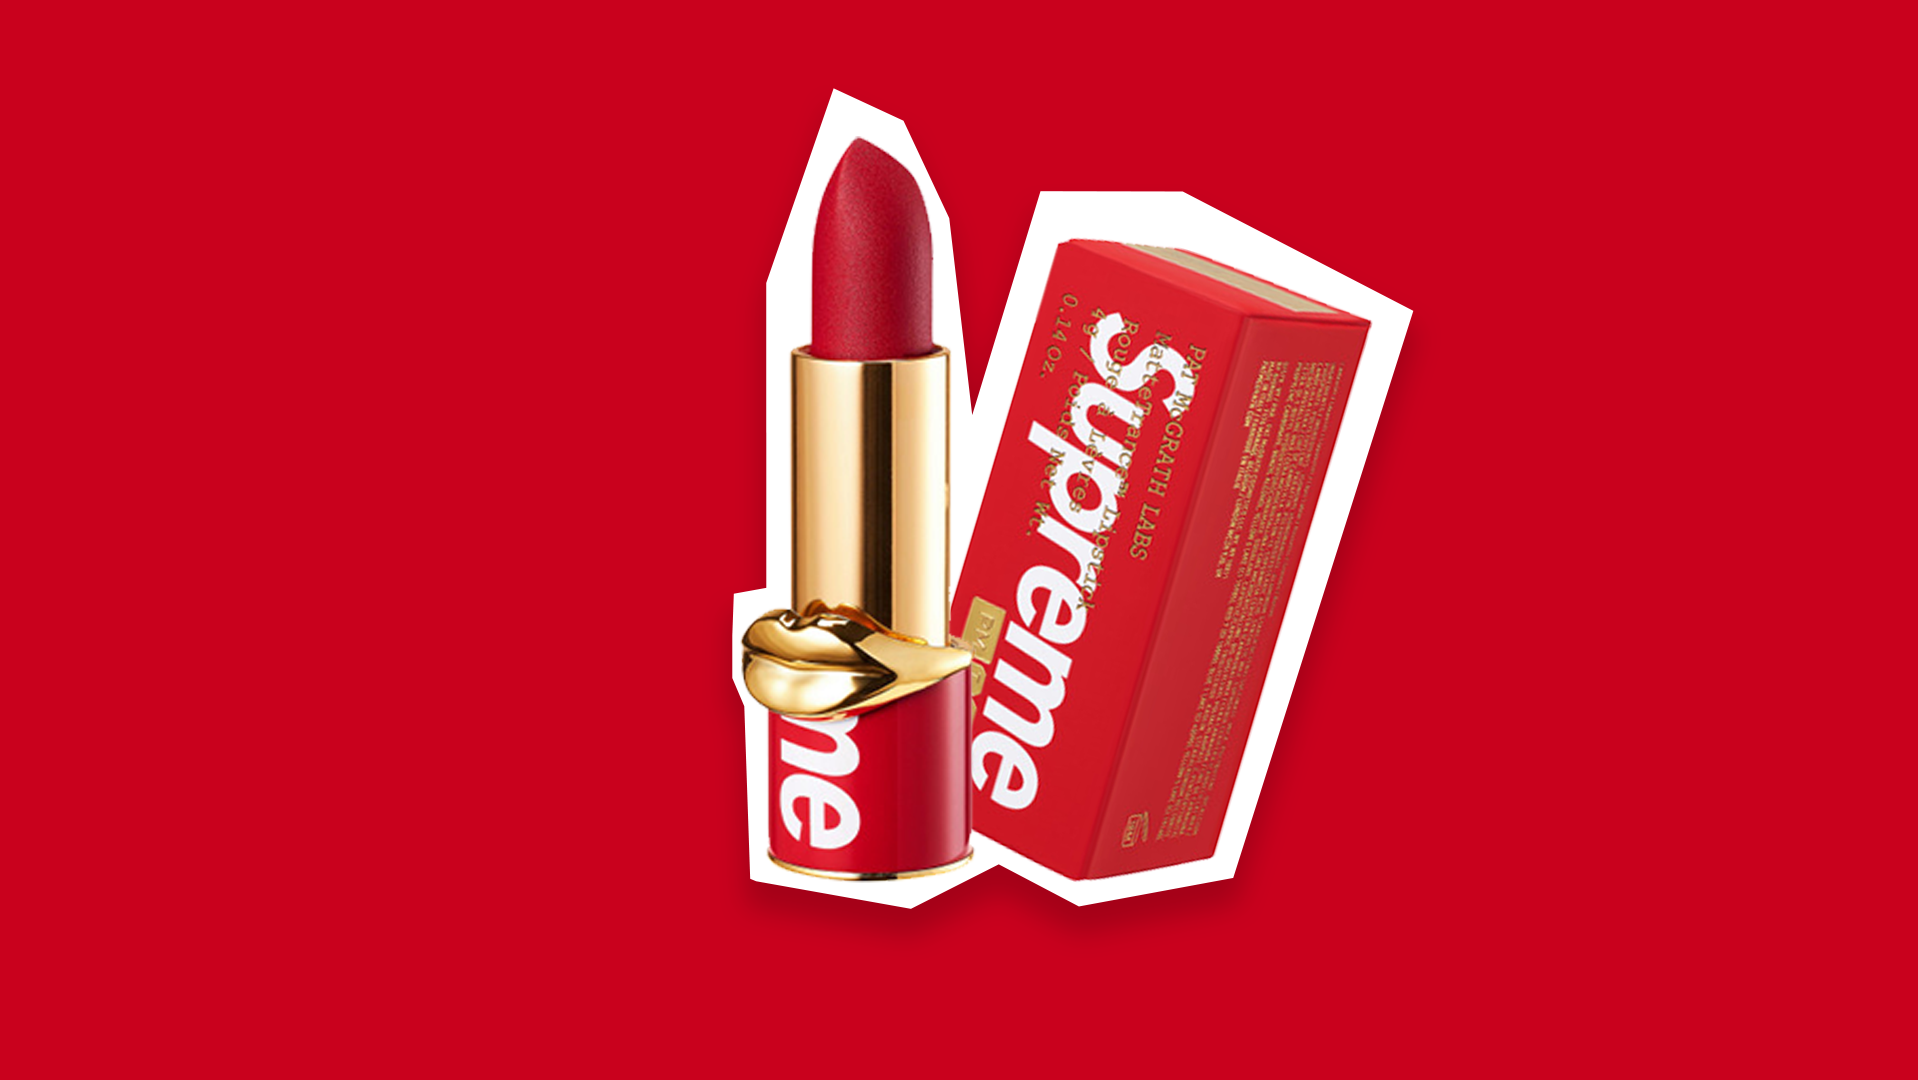 Supreme Drops A New Lipstick With Pat McGrath Dieline Design